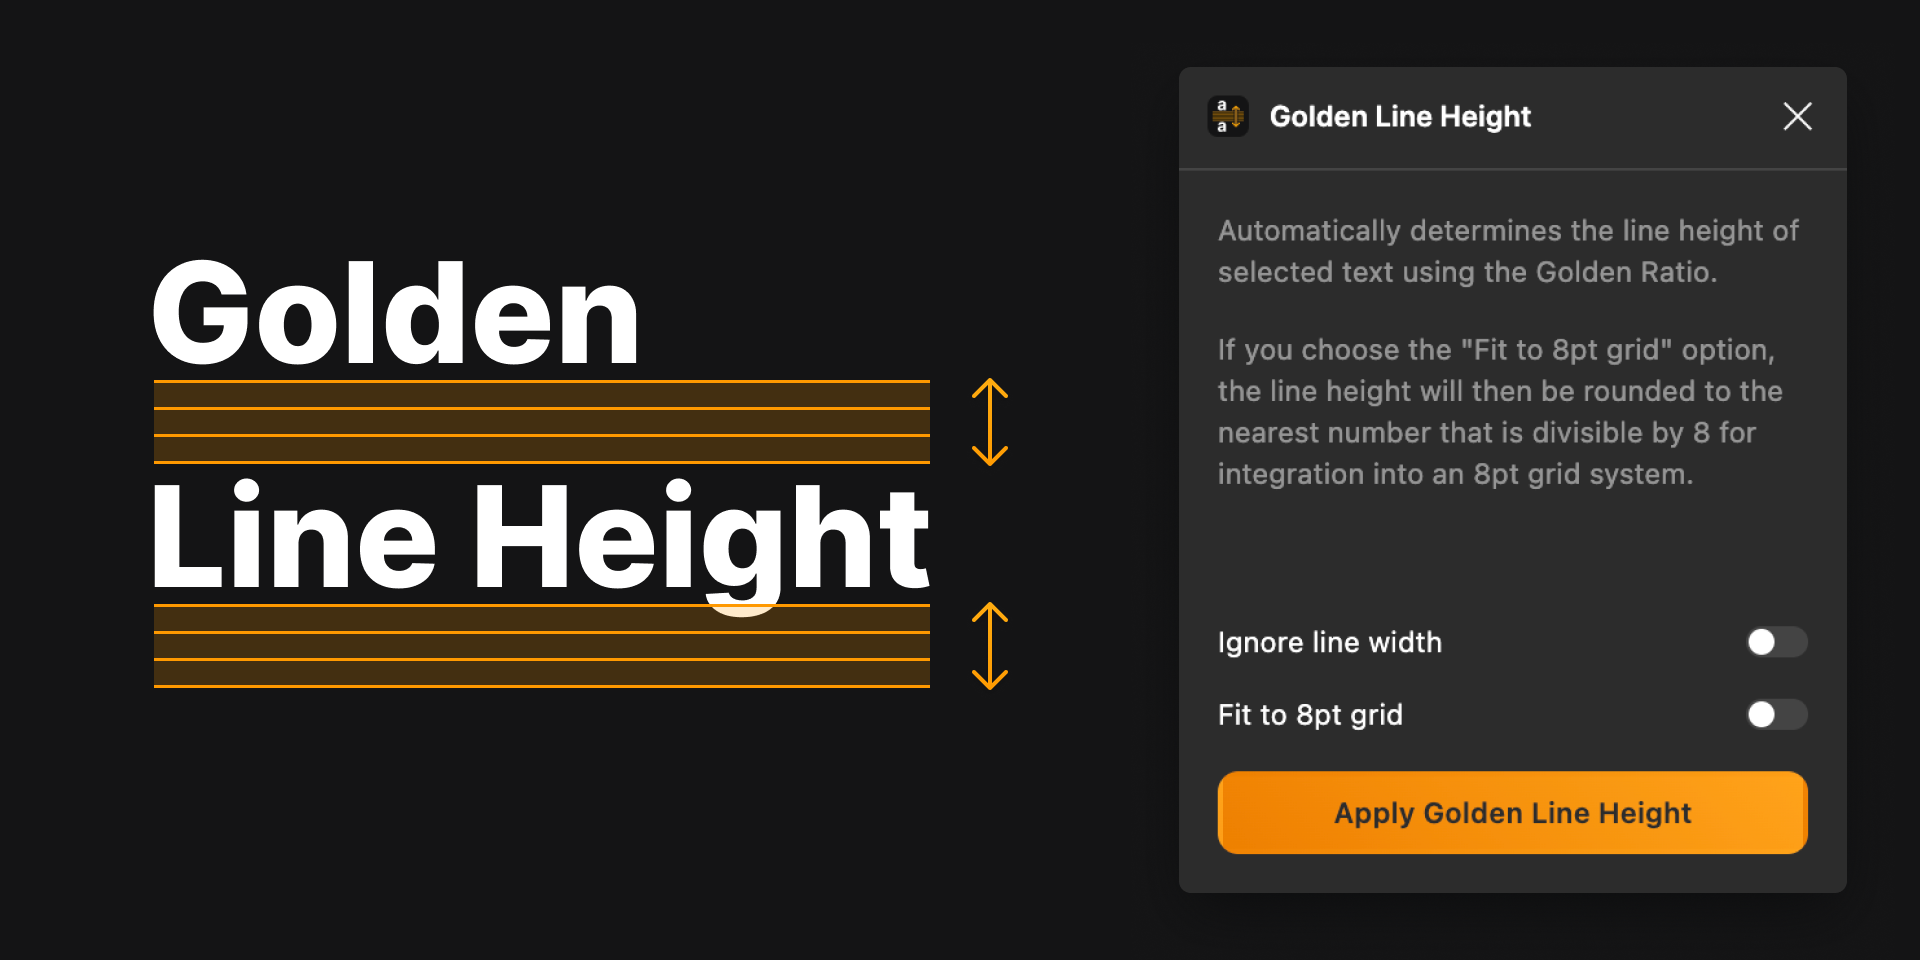 установить плагин для Фигмы Golden Line Height